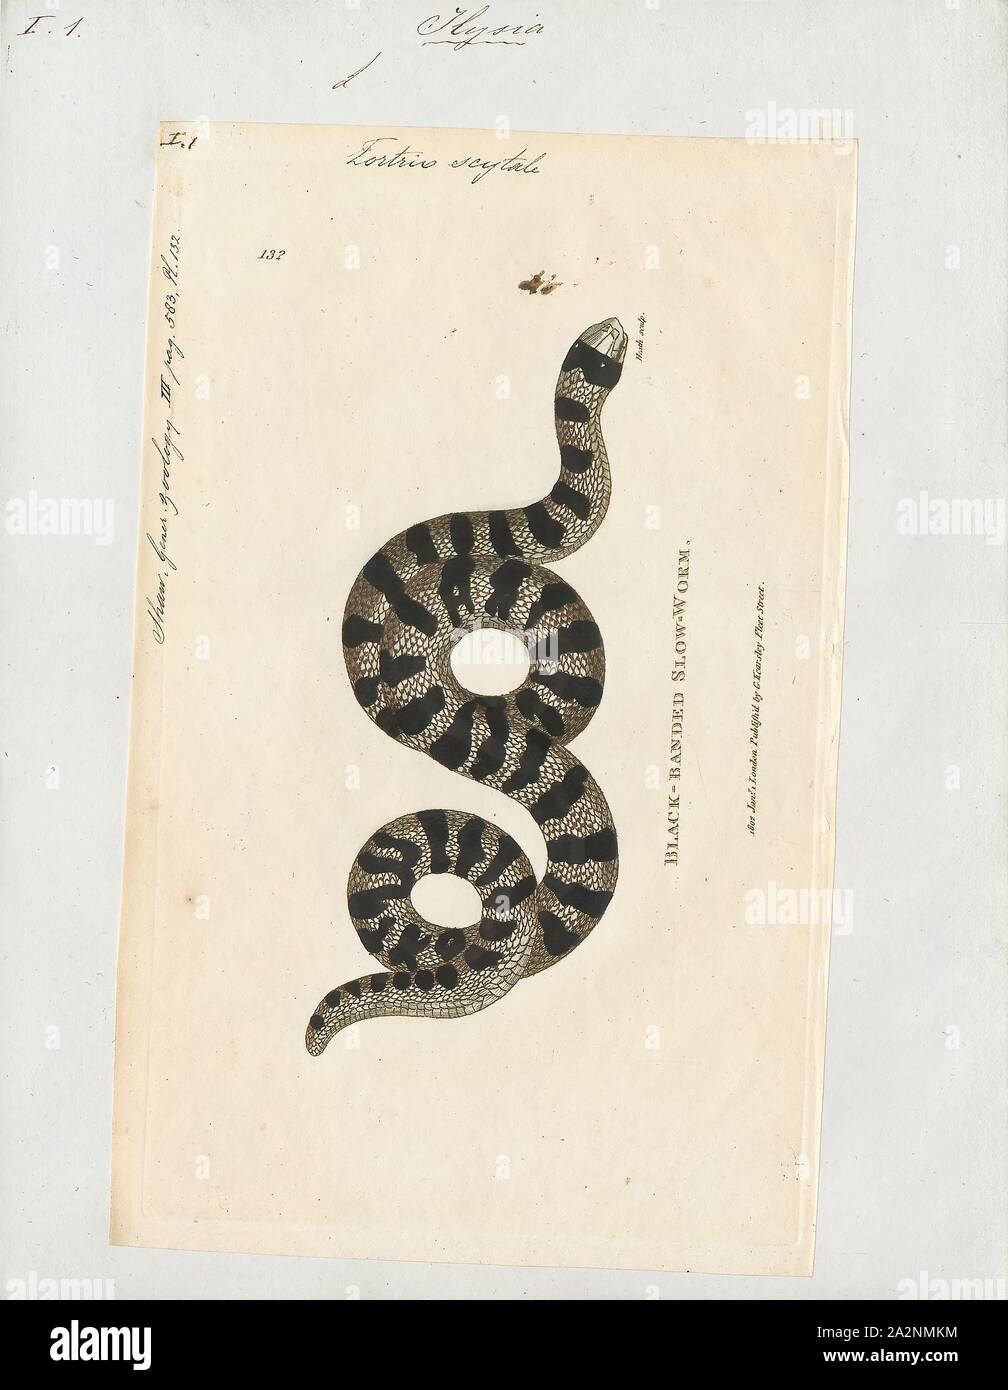 Tortrix scytale, Imprimer, la famille Aniliidae sont un genre monotypique  créé pour le genre Anilius qui contient la seule espèce scytale. Noms  communs : tuyau Américain et faux serpent Coral Snake. C'est